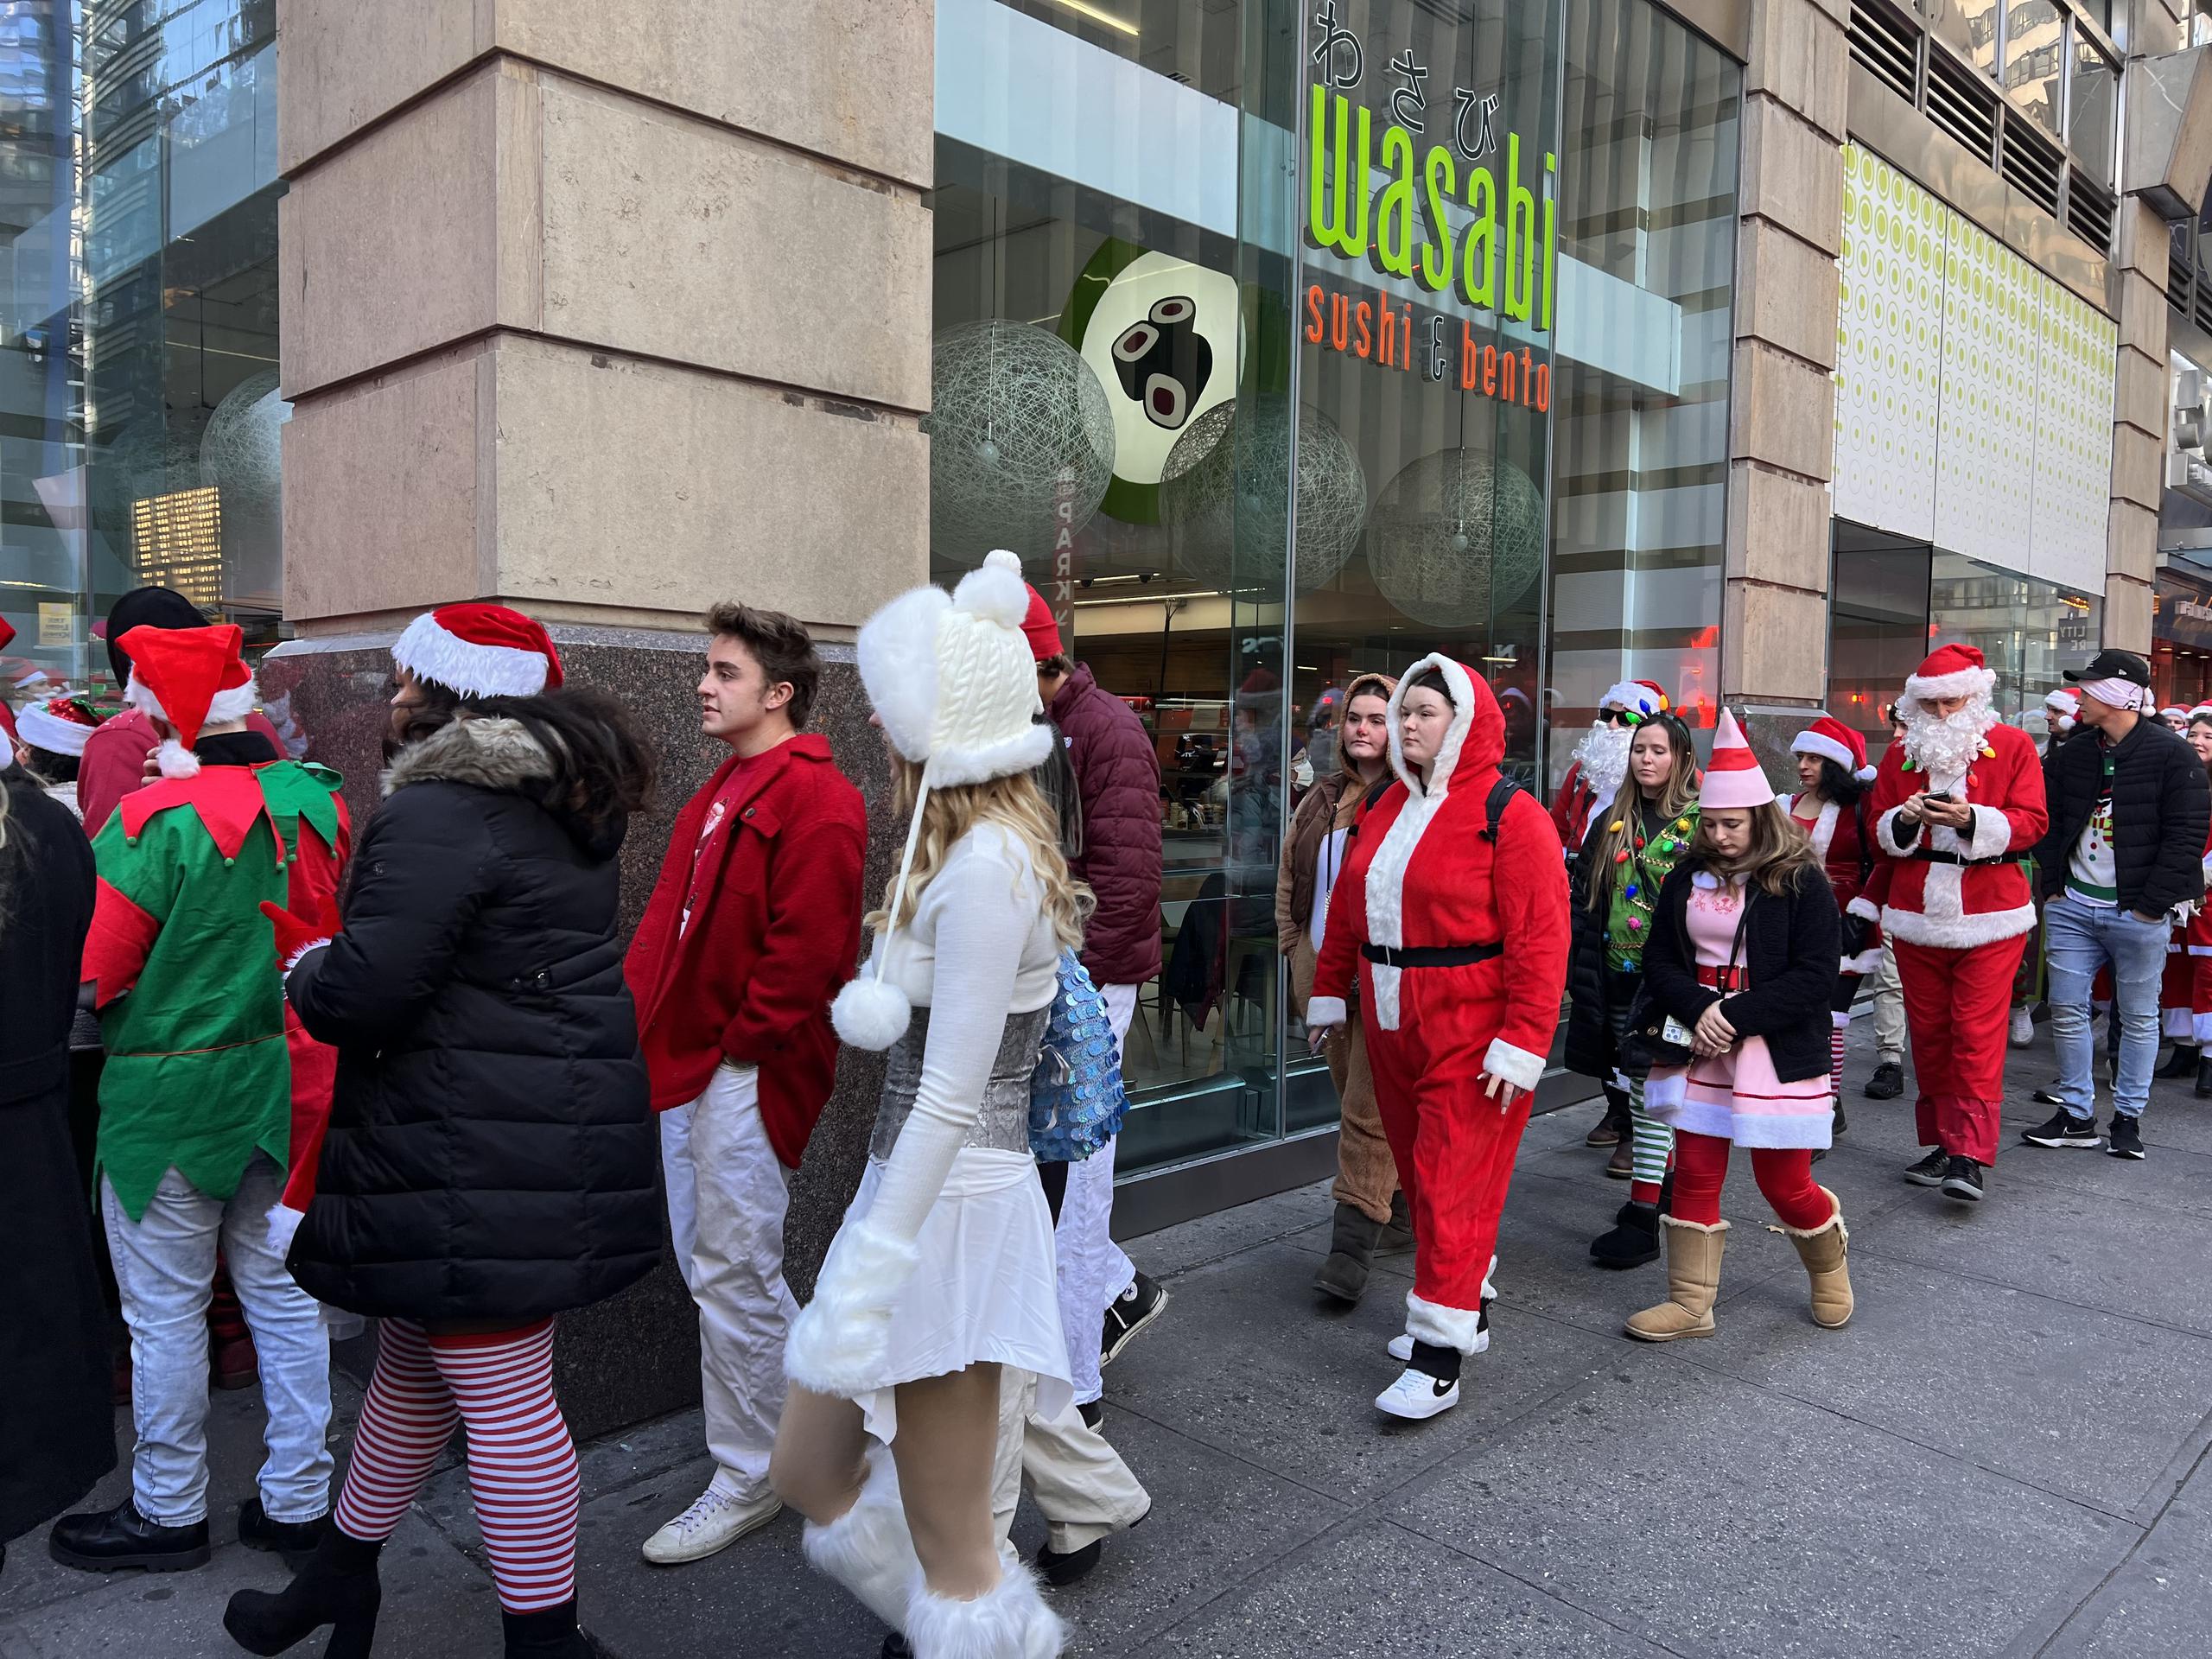 Miles de personas llegan disfrazadas de temas navideños y Santa Claus para celebrar la Navidad de una manera irreverente.